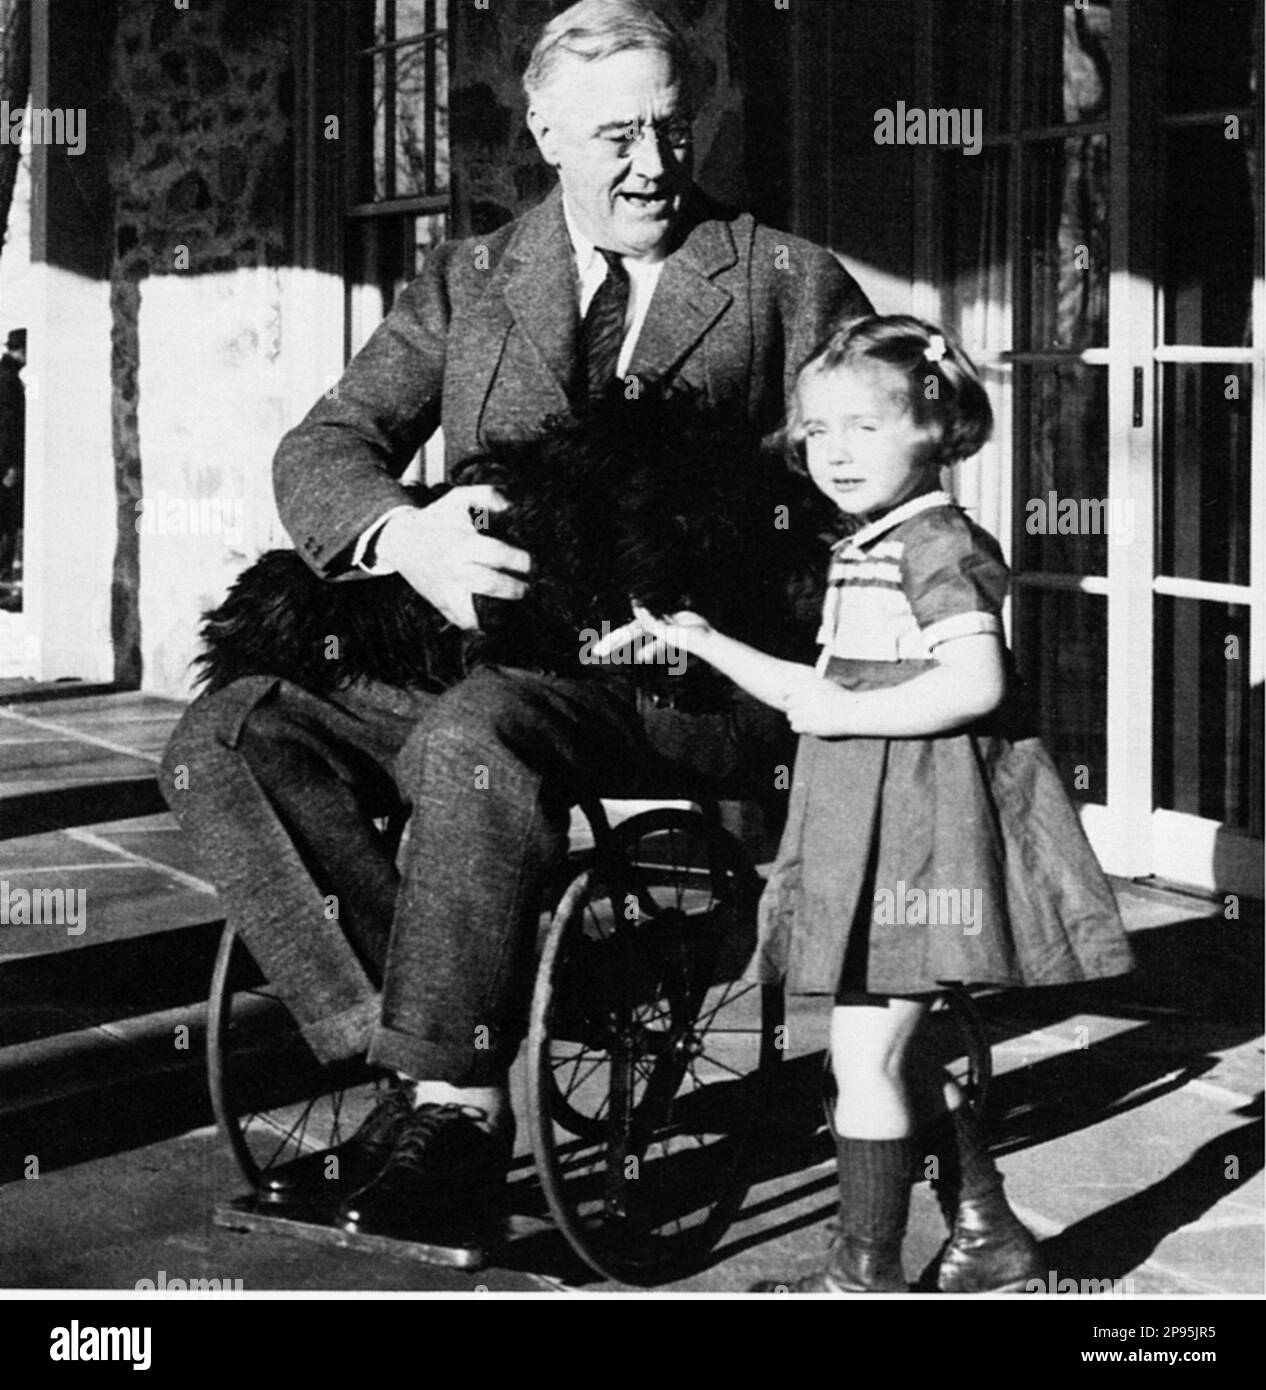 FRANKLIN DELANO ROOSEVELT ( 1882 – 1945 ), souvent mentionné par ses initiales FDR, était le président des États-Unis en 32nd. A été président des États-Unis en 22nd et 24th, de 4 mars 1933 à 12 avril 1945 . Dans cette photo en fauteuil roulant avec un nehon . - Presidente della Repubblica - USA - ritratto - portrait - cravatta - cravate - collier - colletto - sedia a rotelle - ETATS-UNIS - STATI UNITI --- Archivio GBB Banque D'Images